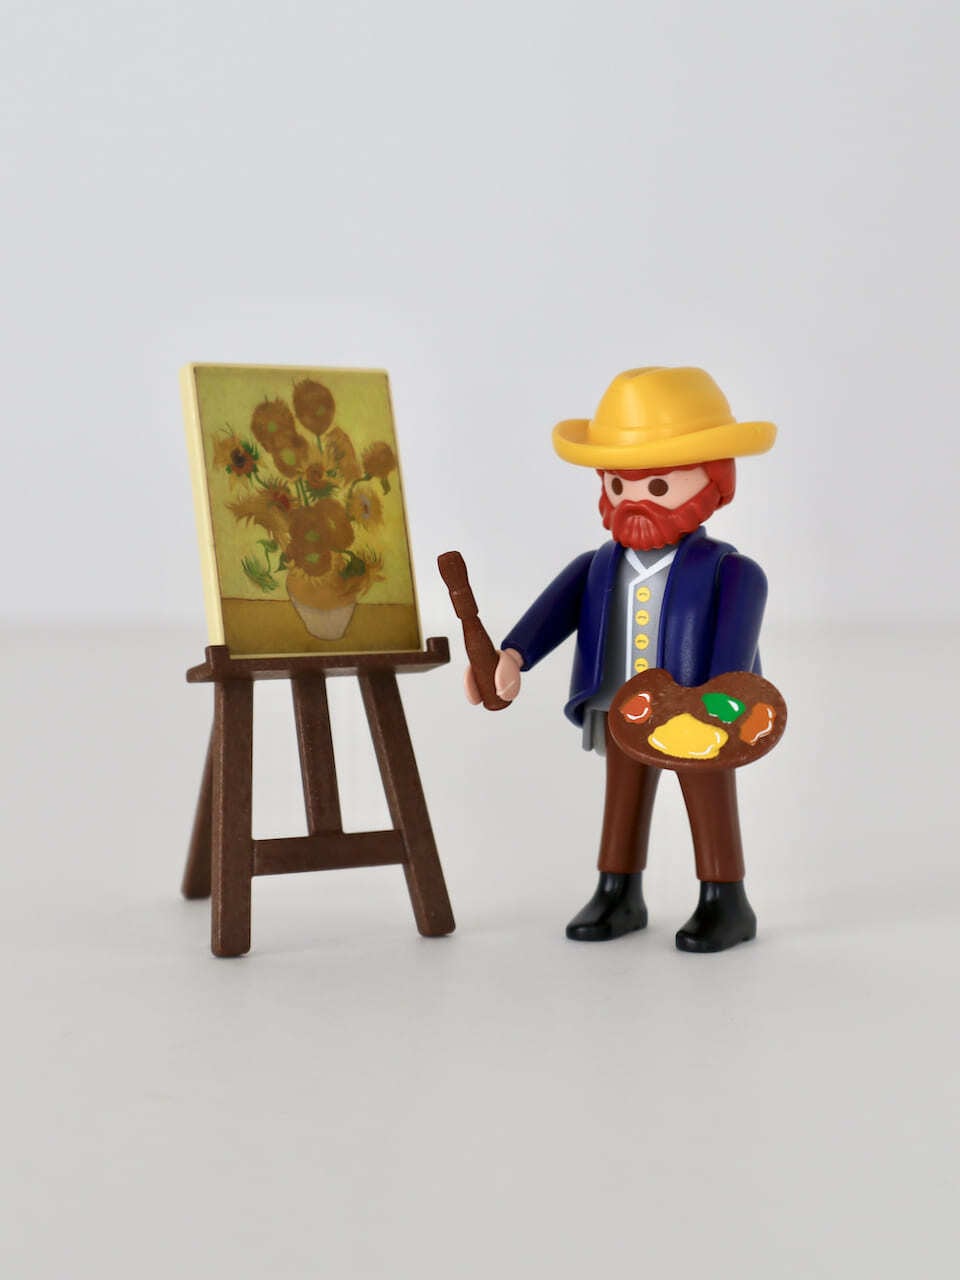 プレイモービル ゴッホ 「ひまわり」 ゴッホ美術館 / Playmobil "Sunflowers" 70686 Van Gogh Museum